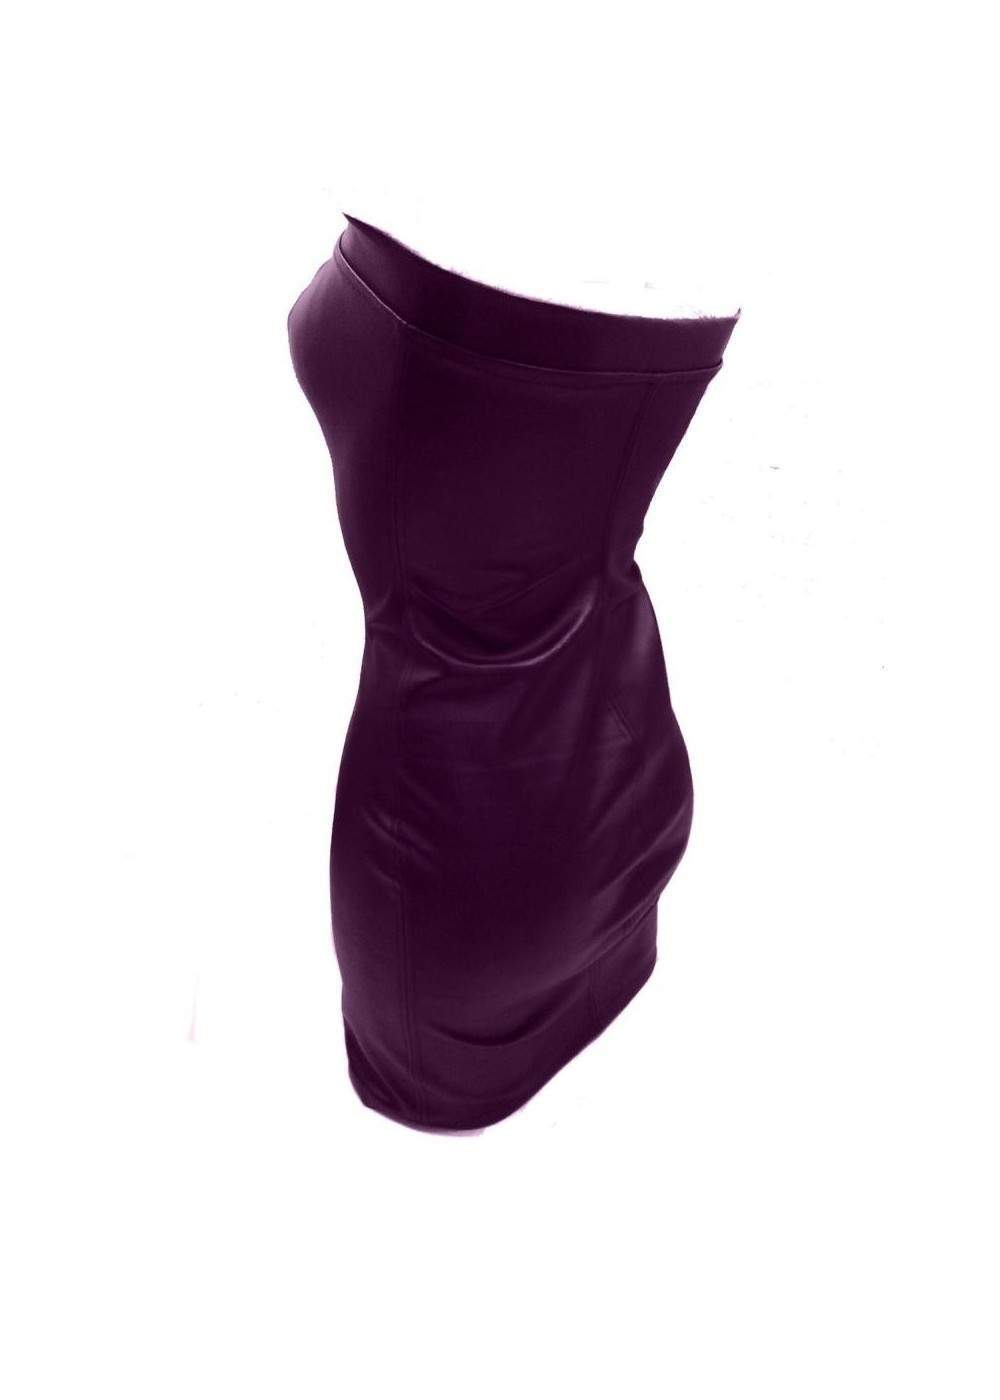 Super softes Leder Kleid lila Größen 32 - 46 ab 29,00 € - 